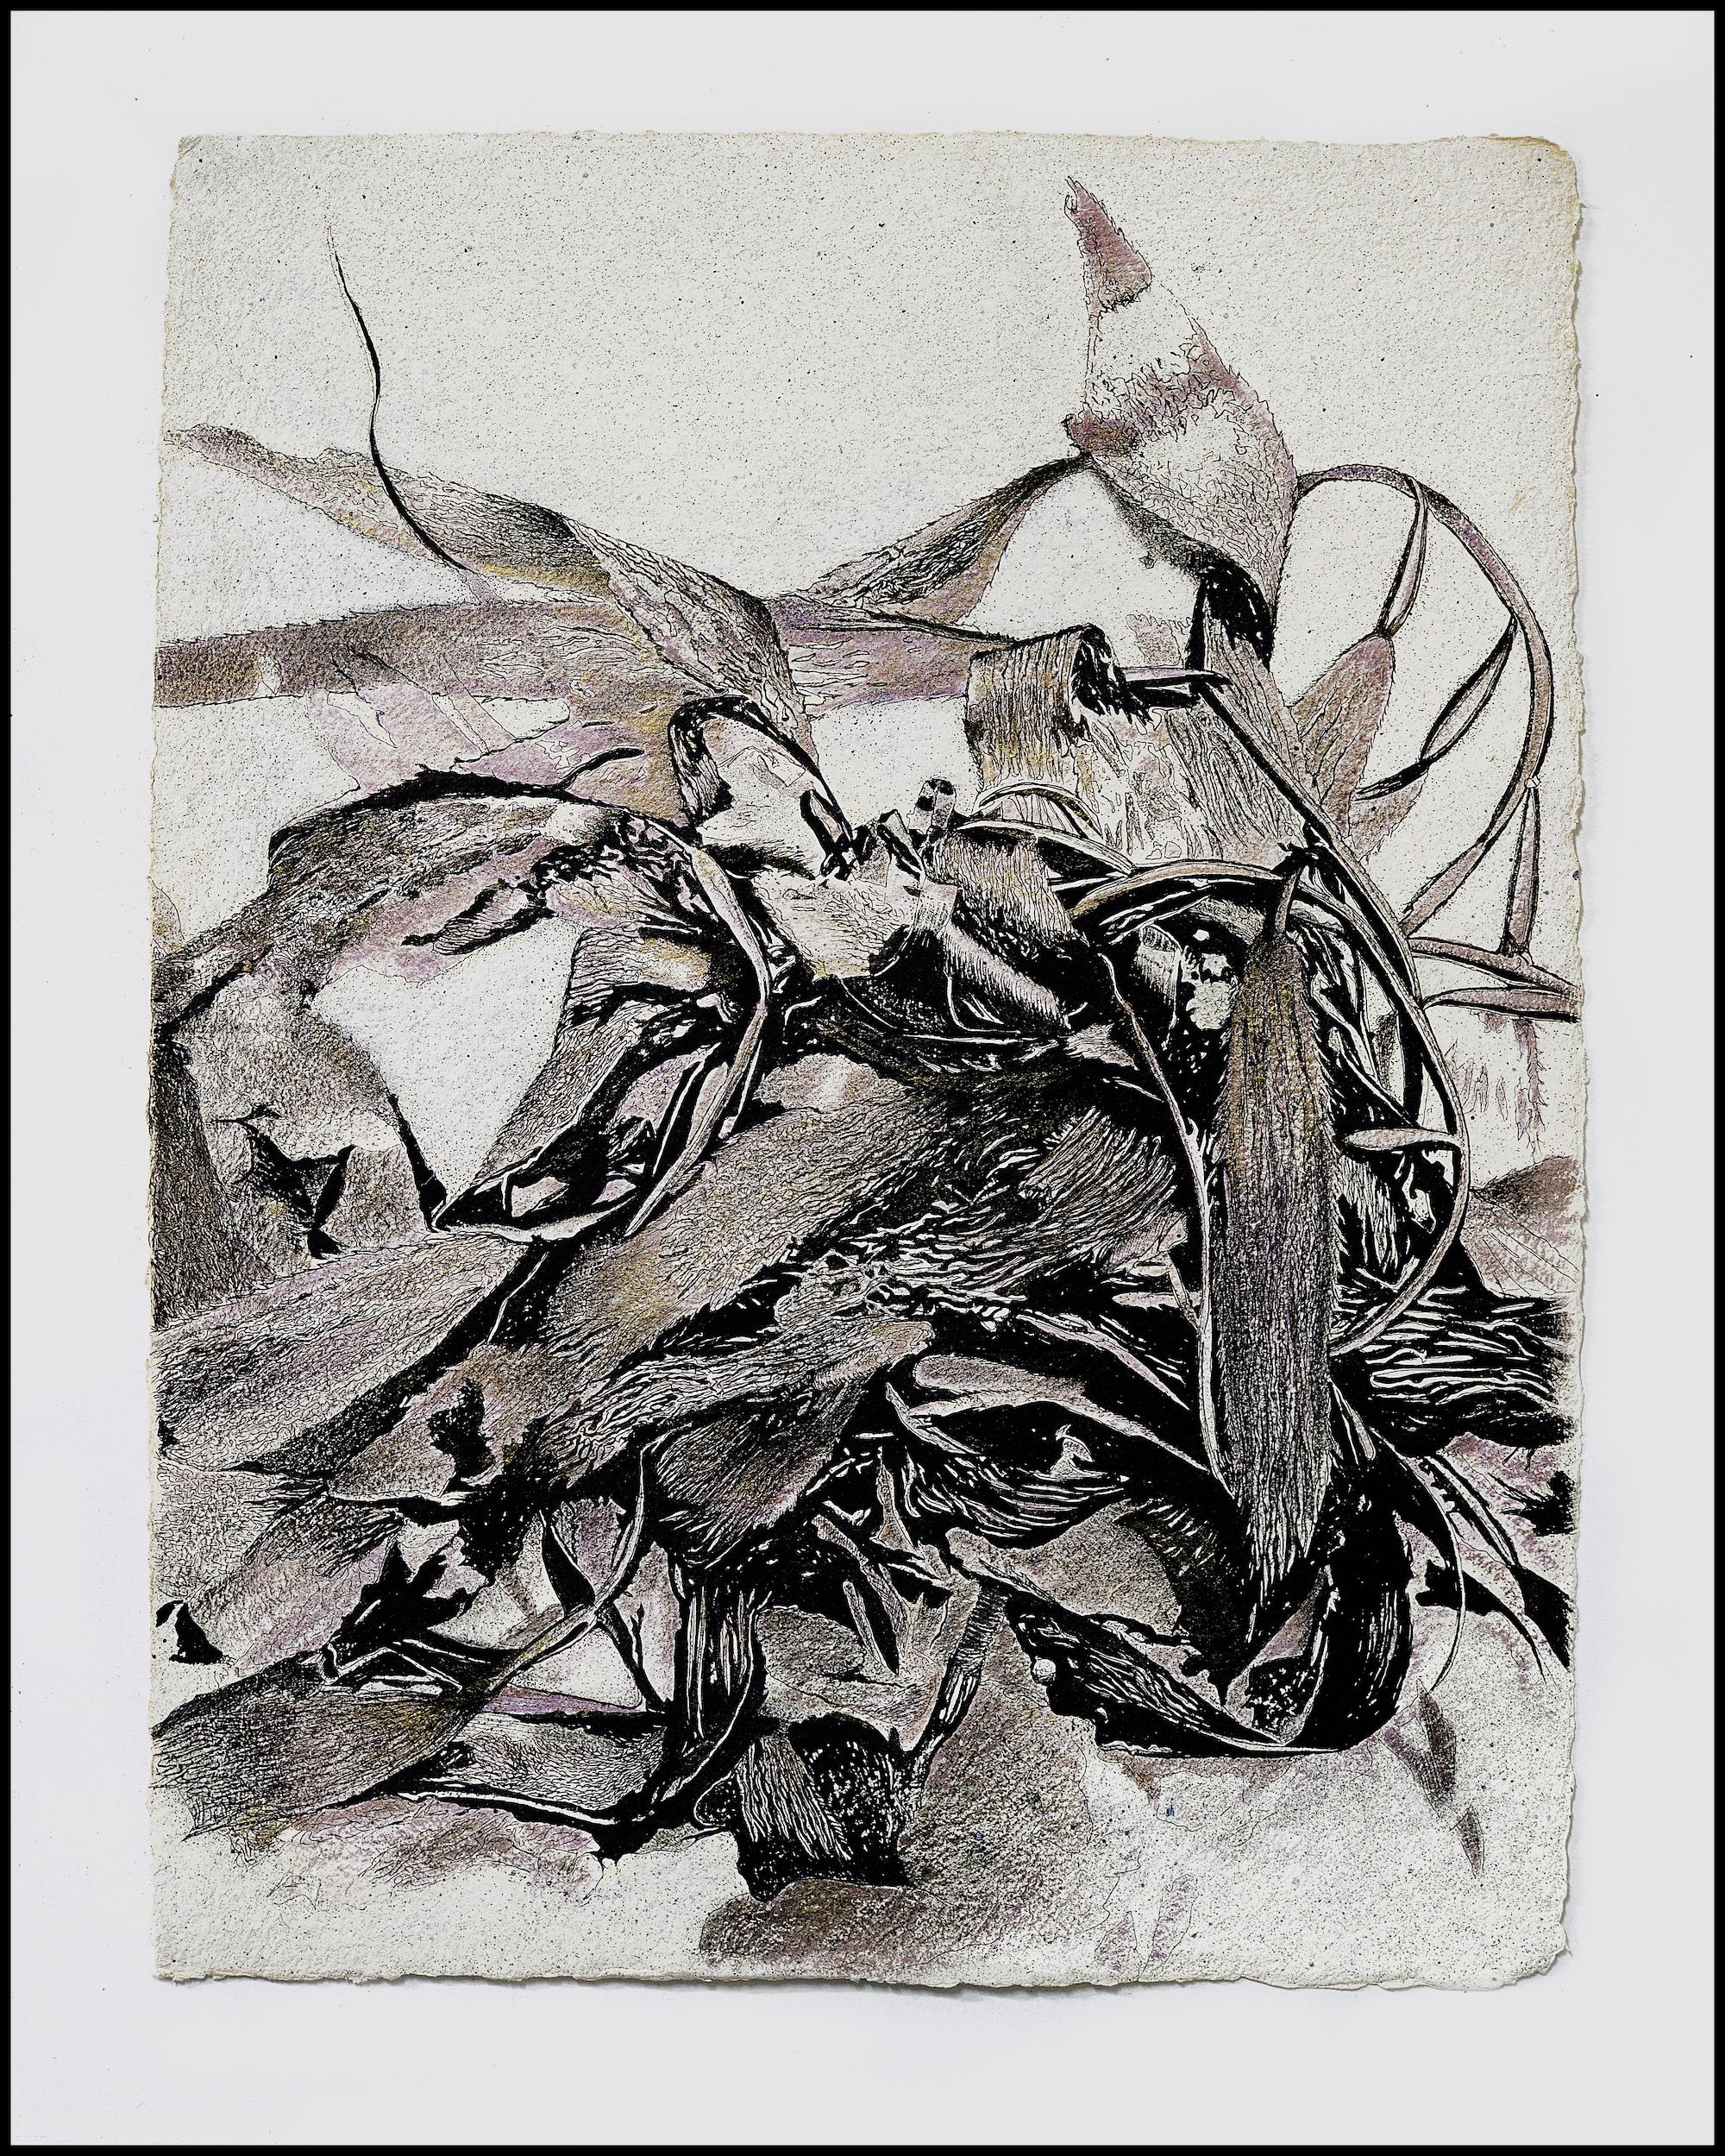 Alga Aligata No. 1 - seaweed kelp oceanic abstracted work on paper 1